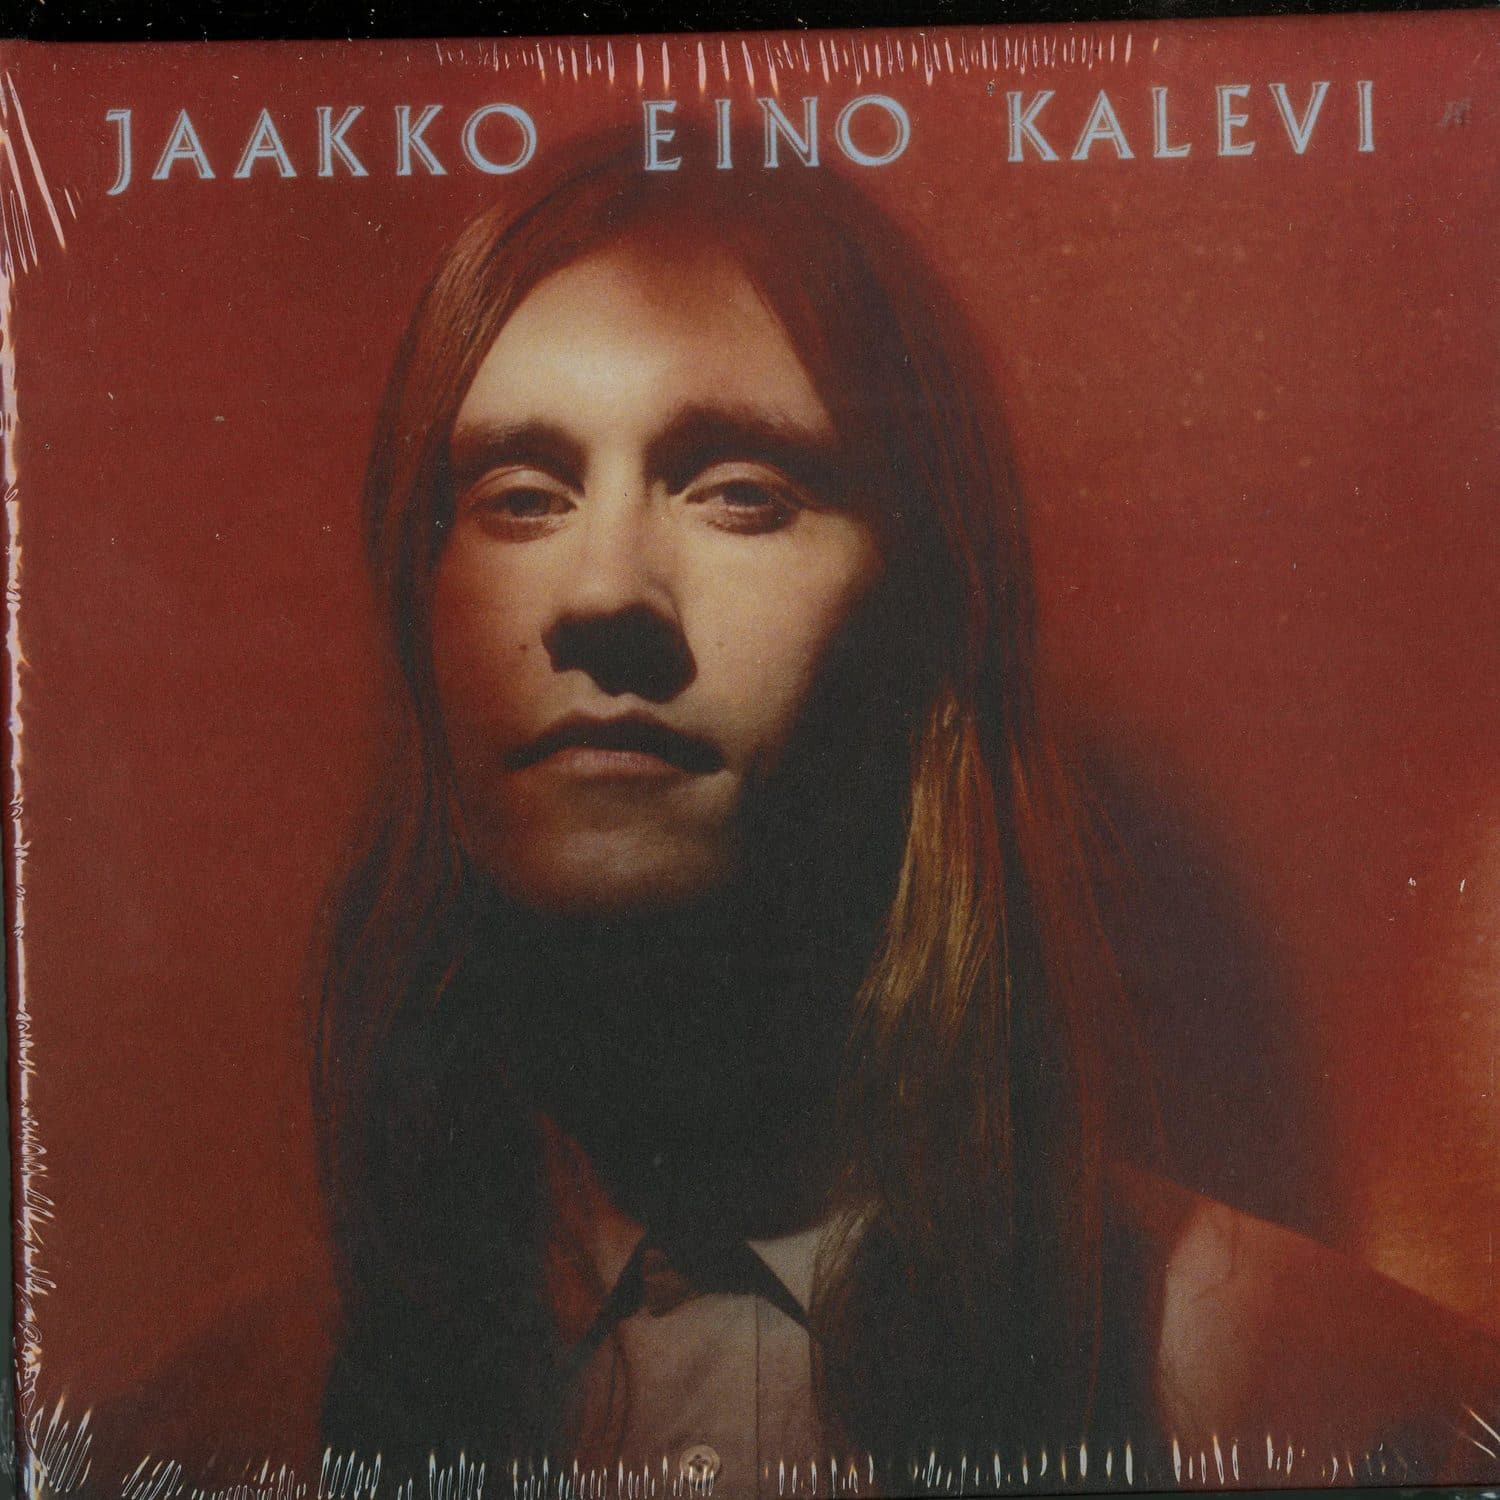 Jaakko Eino Kalevi - JAAKKO EINO KALEVI 